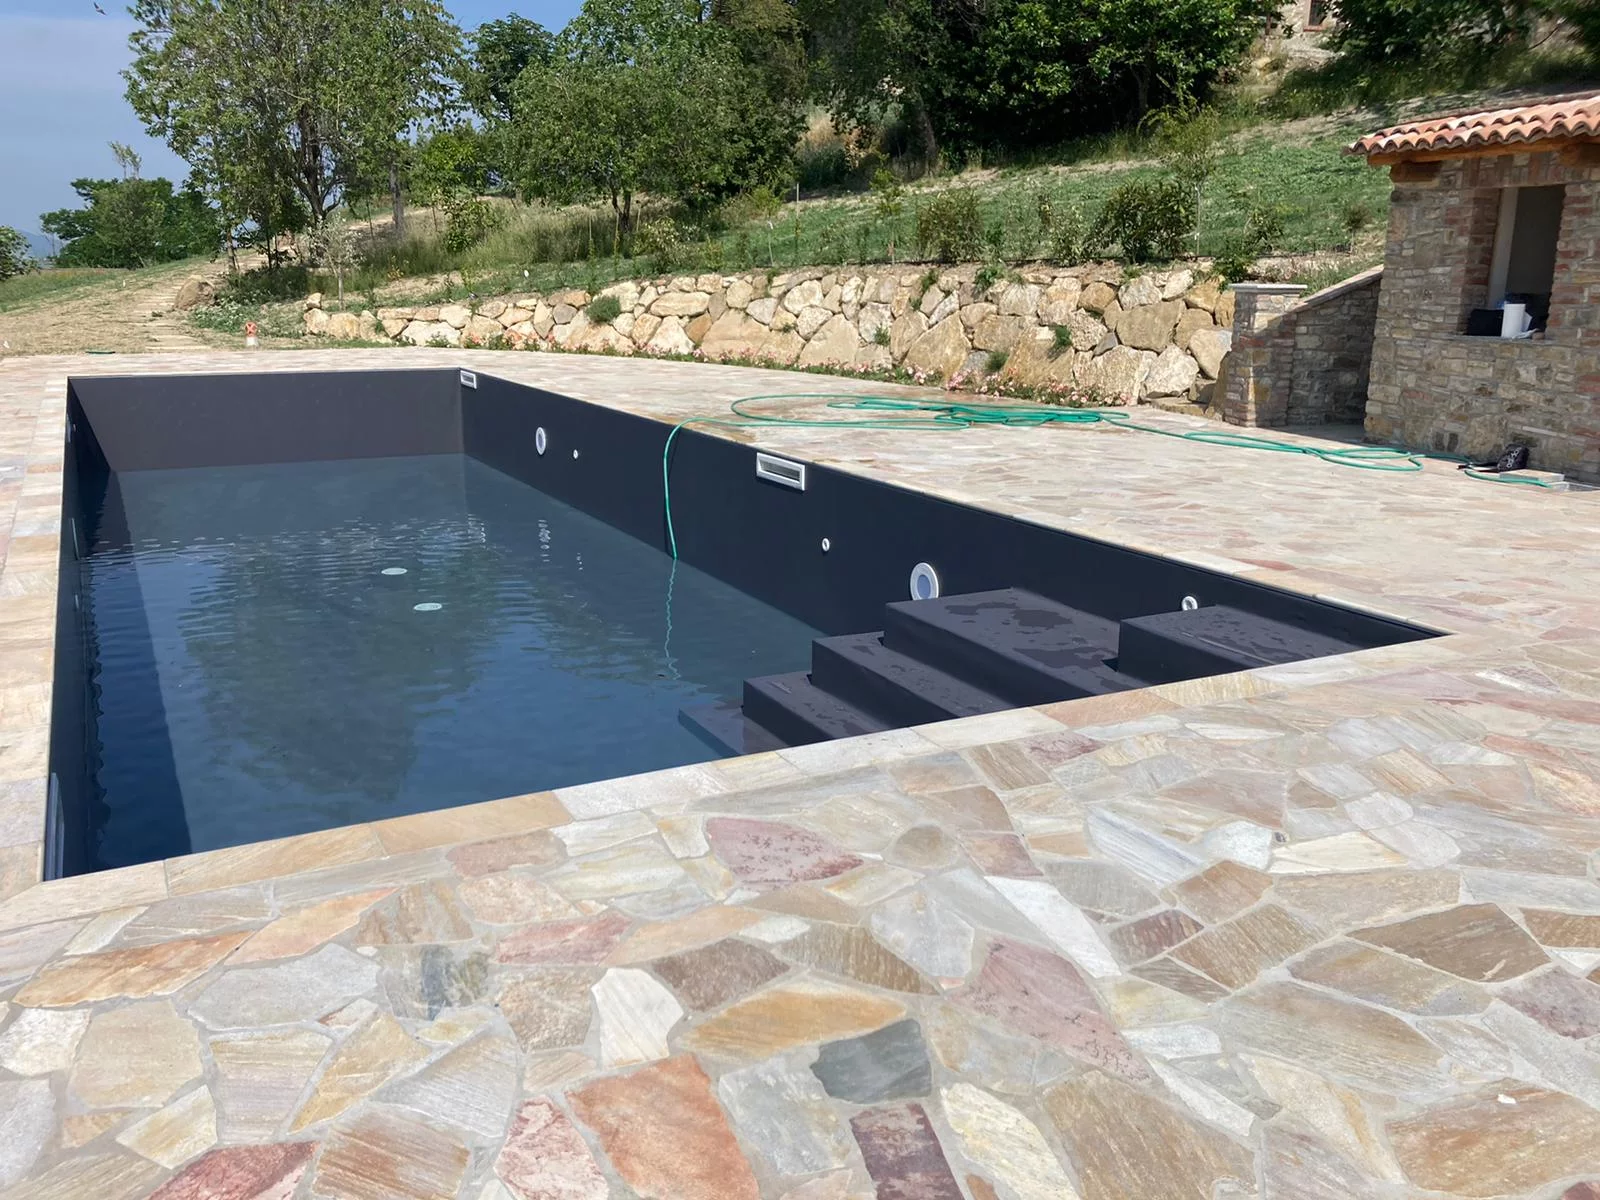 Piscina privata a skimmer, realizzata nelle colline piacentine, con rivestimento Alkorplan grigio antracite, realizzata su progetto - riempimento piscina 